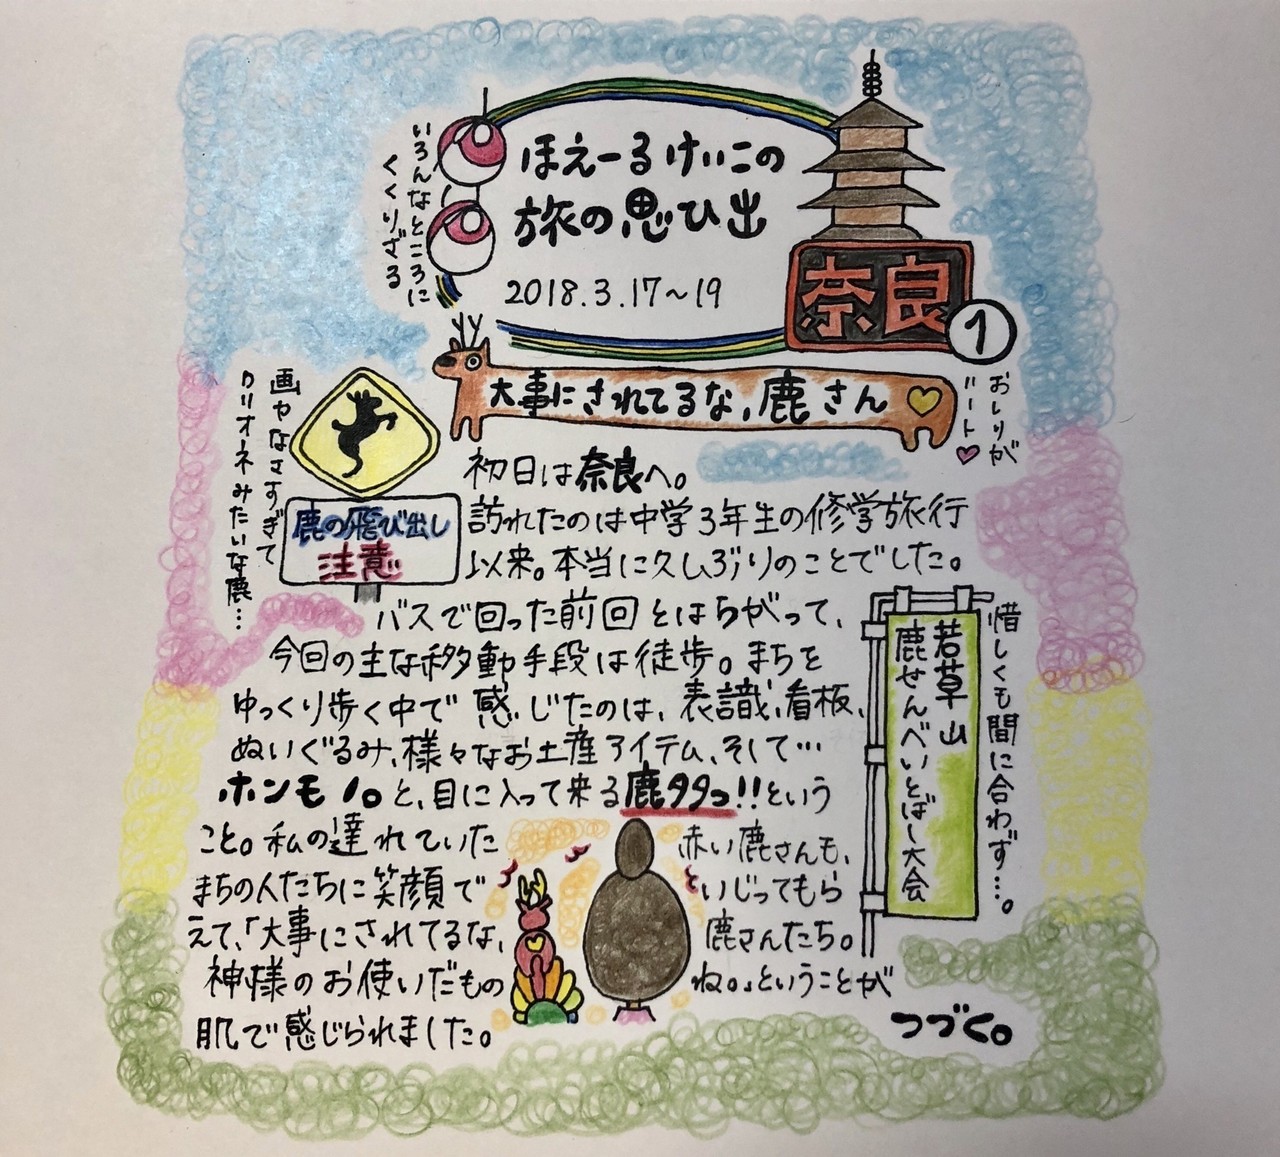 50 かわいい修学旅行 京都 イラスト ブラッククローバー アニメ画像